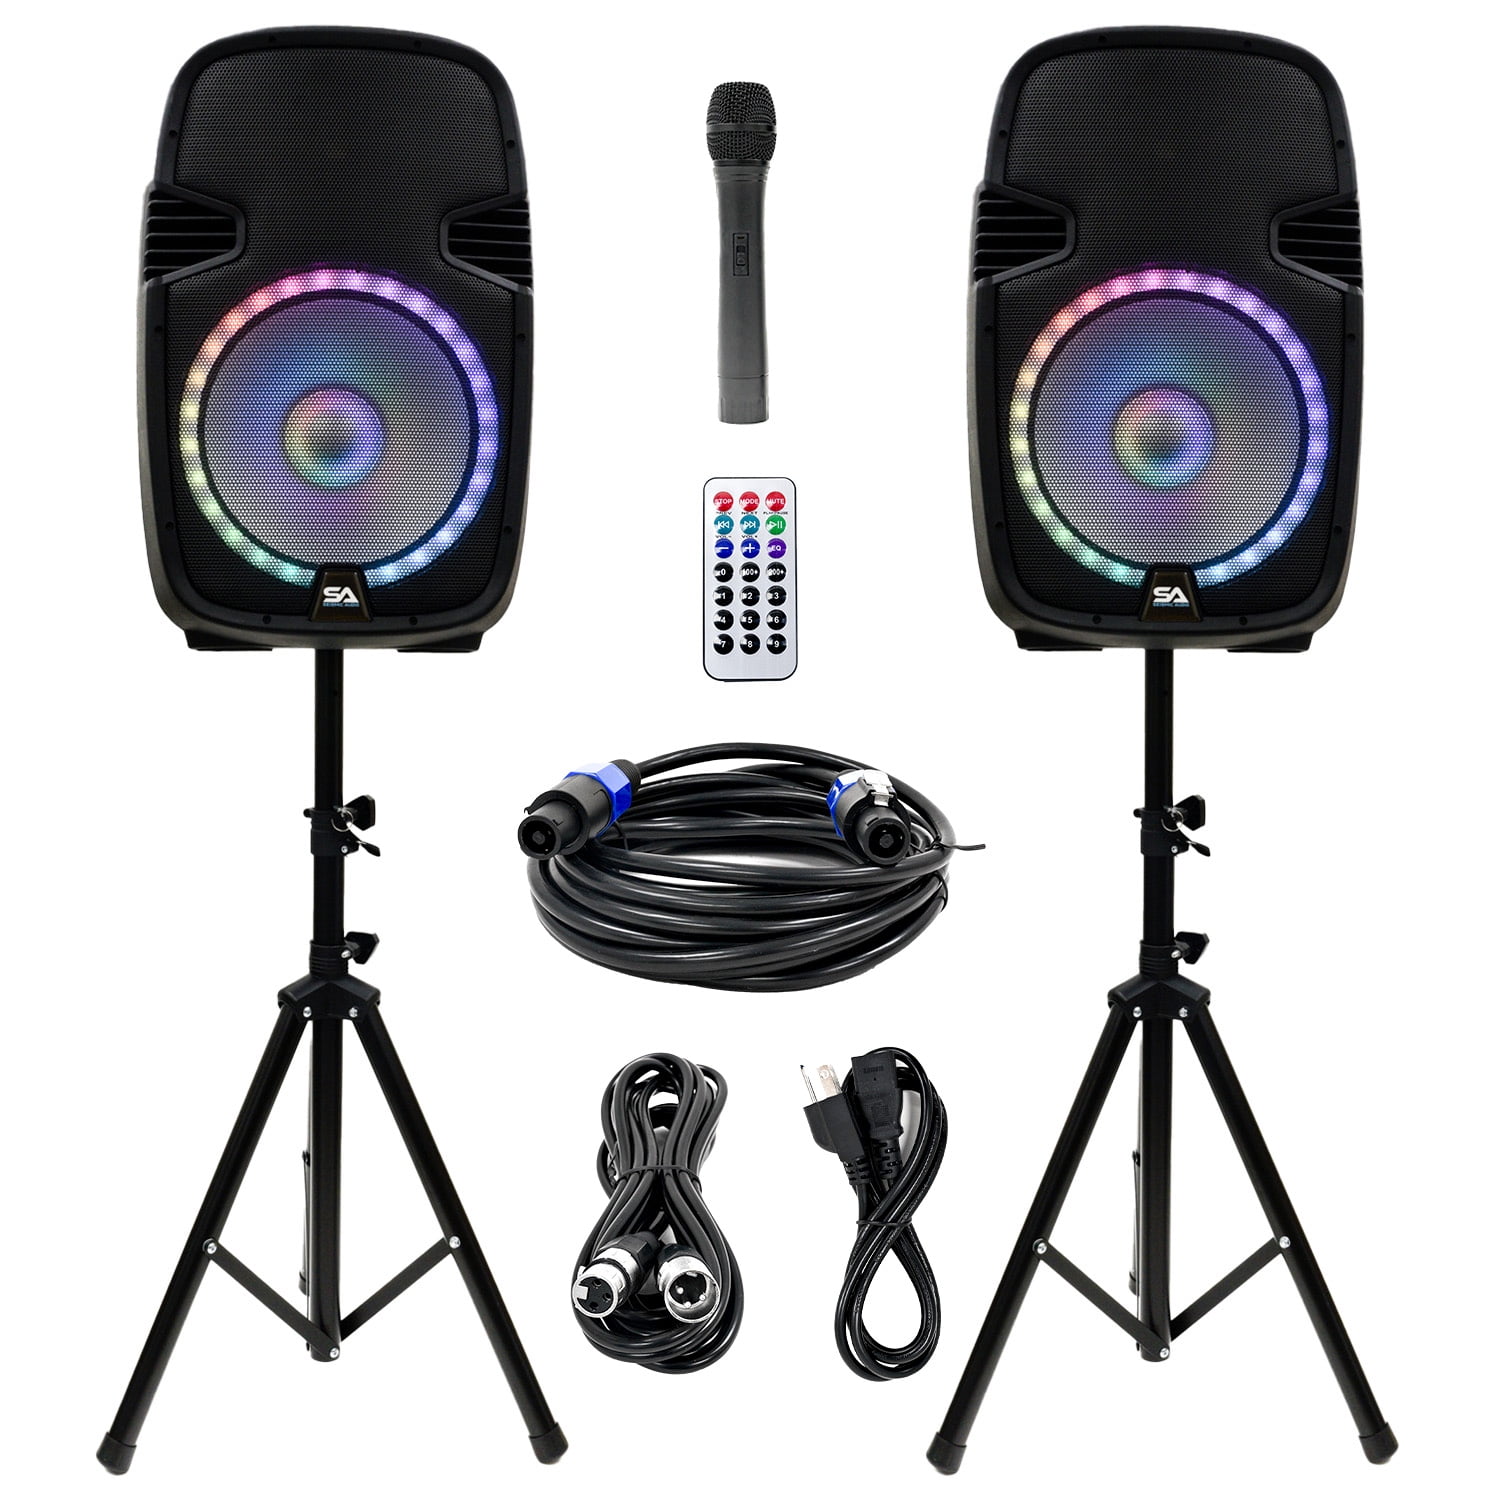 Bar or Floor use Stage PA/DJ Speakers Church Studio Pair of 10 Wedge Style FLOOR MONITORS Band Seismic Audio Karaoke Drummer use 